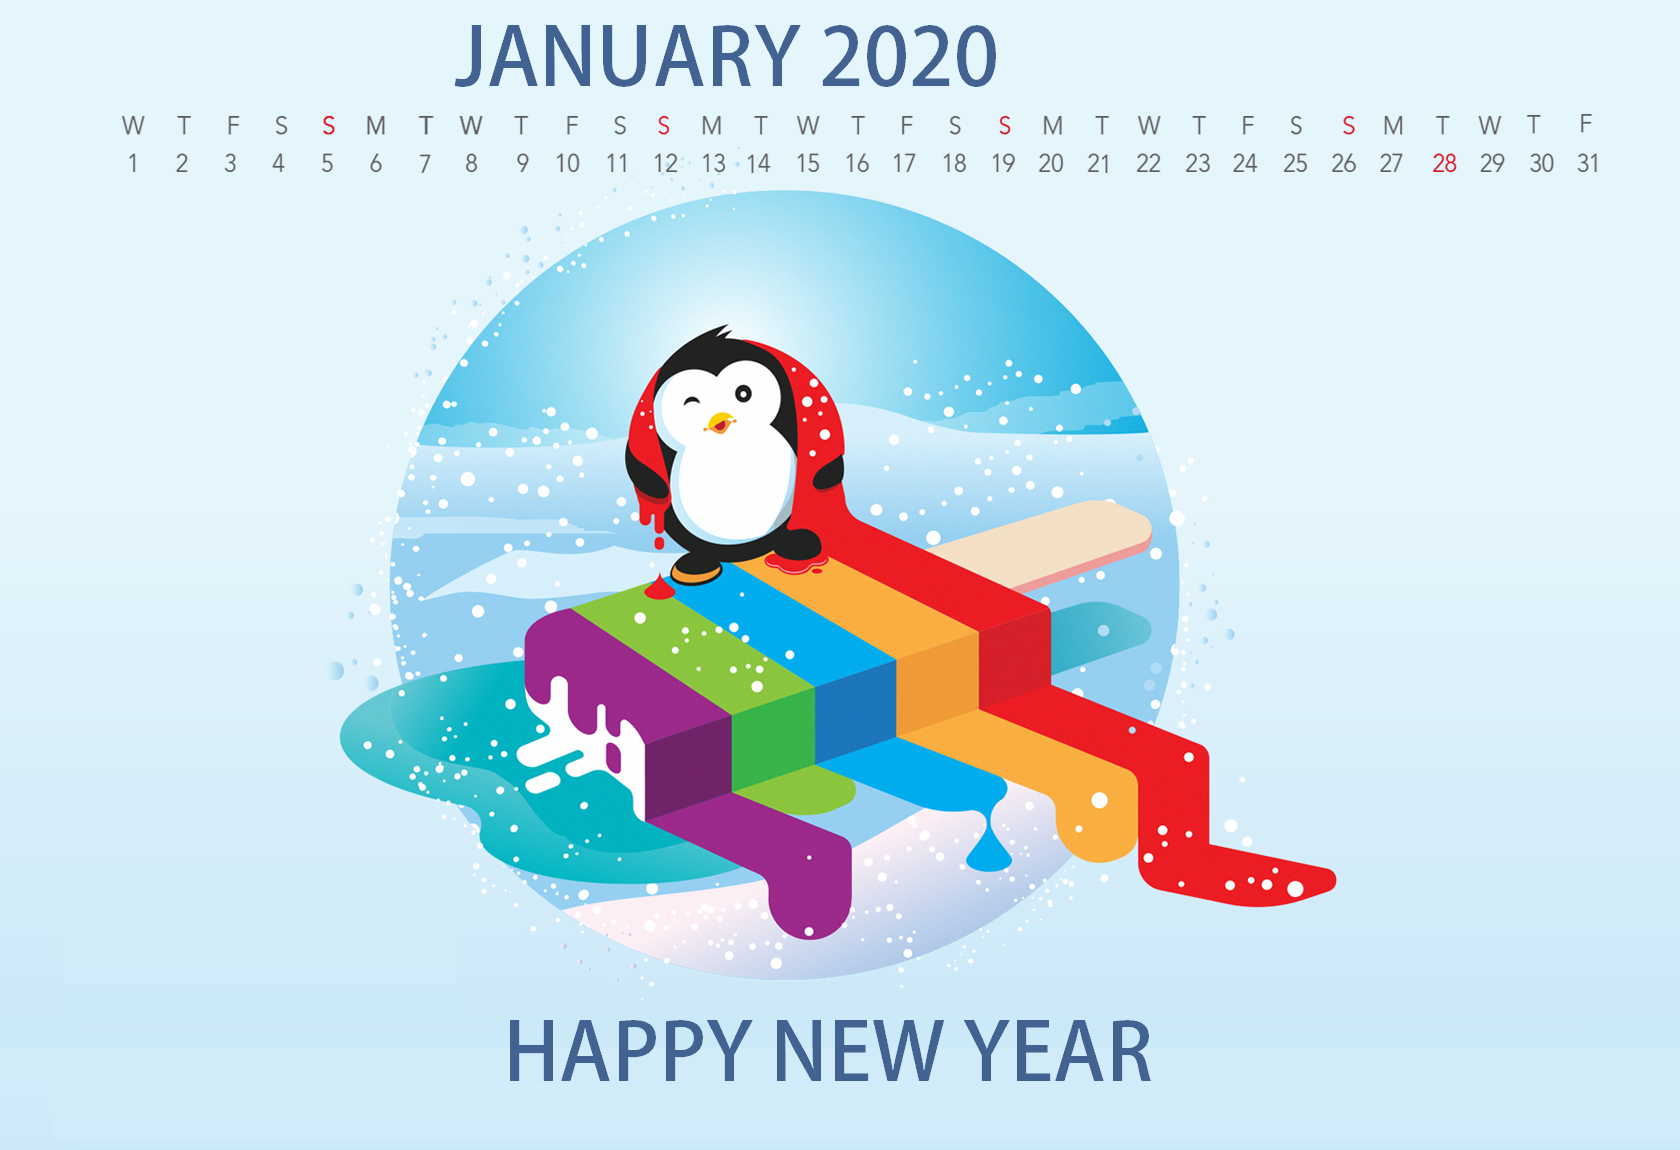 Cute 2020 Desktop Calendar Wallpaper Latest Calendar